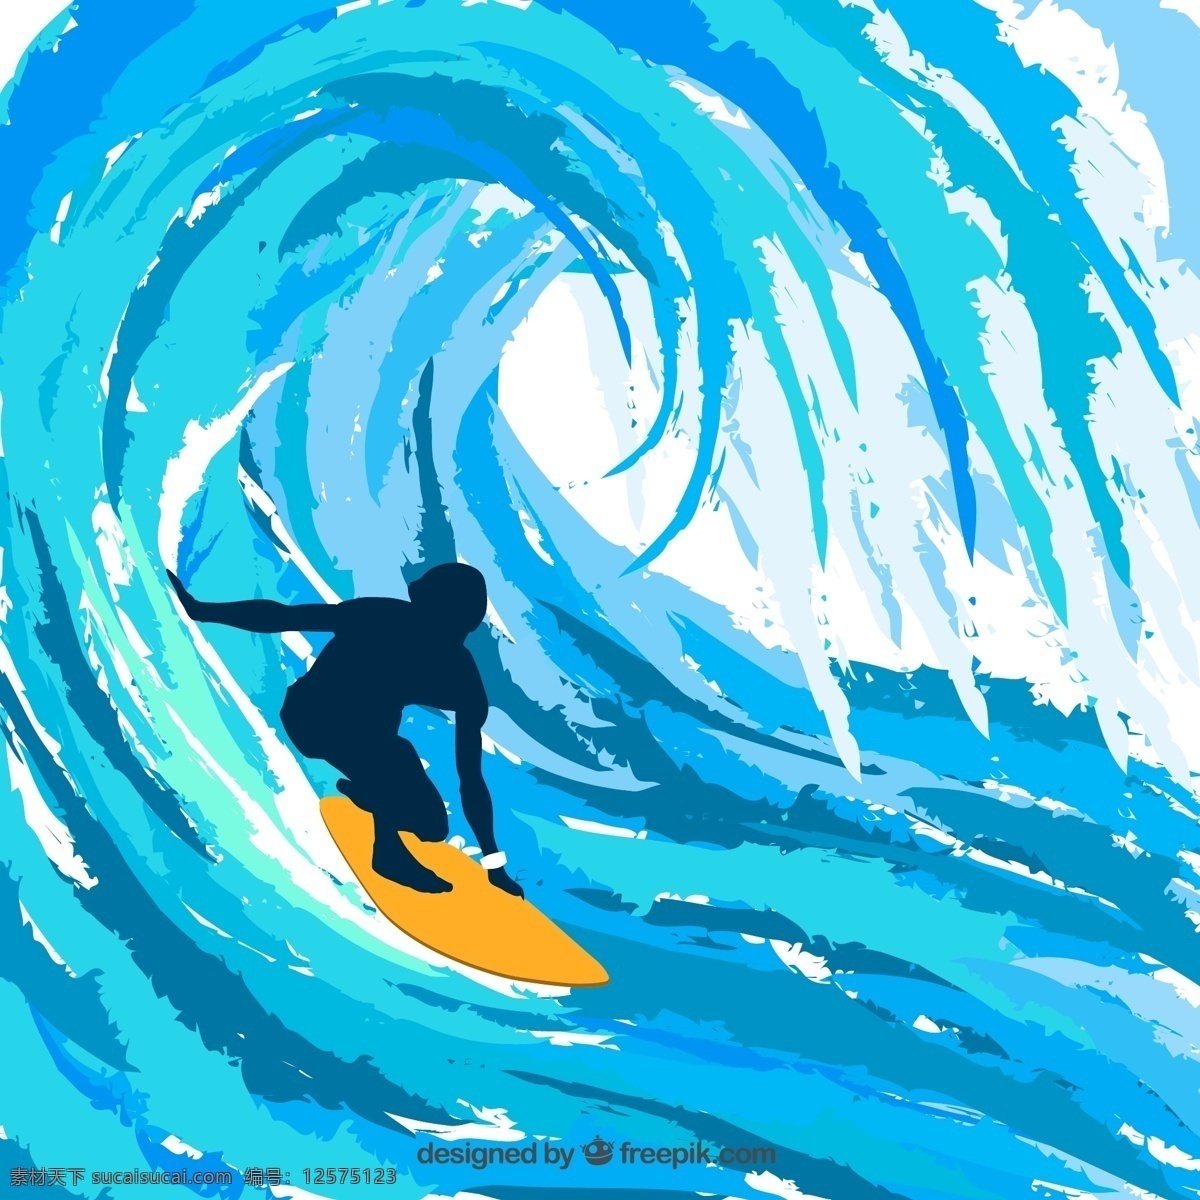 冲浪人物剪影 大海 体育运动 冲浪 人物 剪影 海浪 矢量图 ai格式 青色 天蓝色